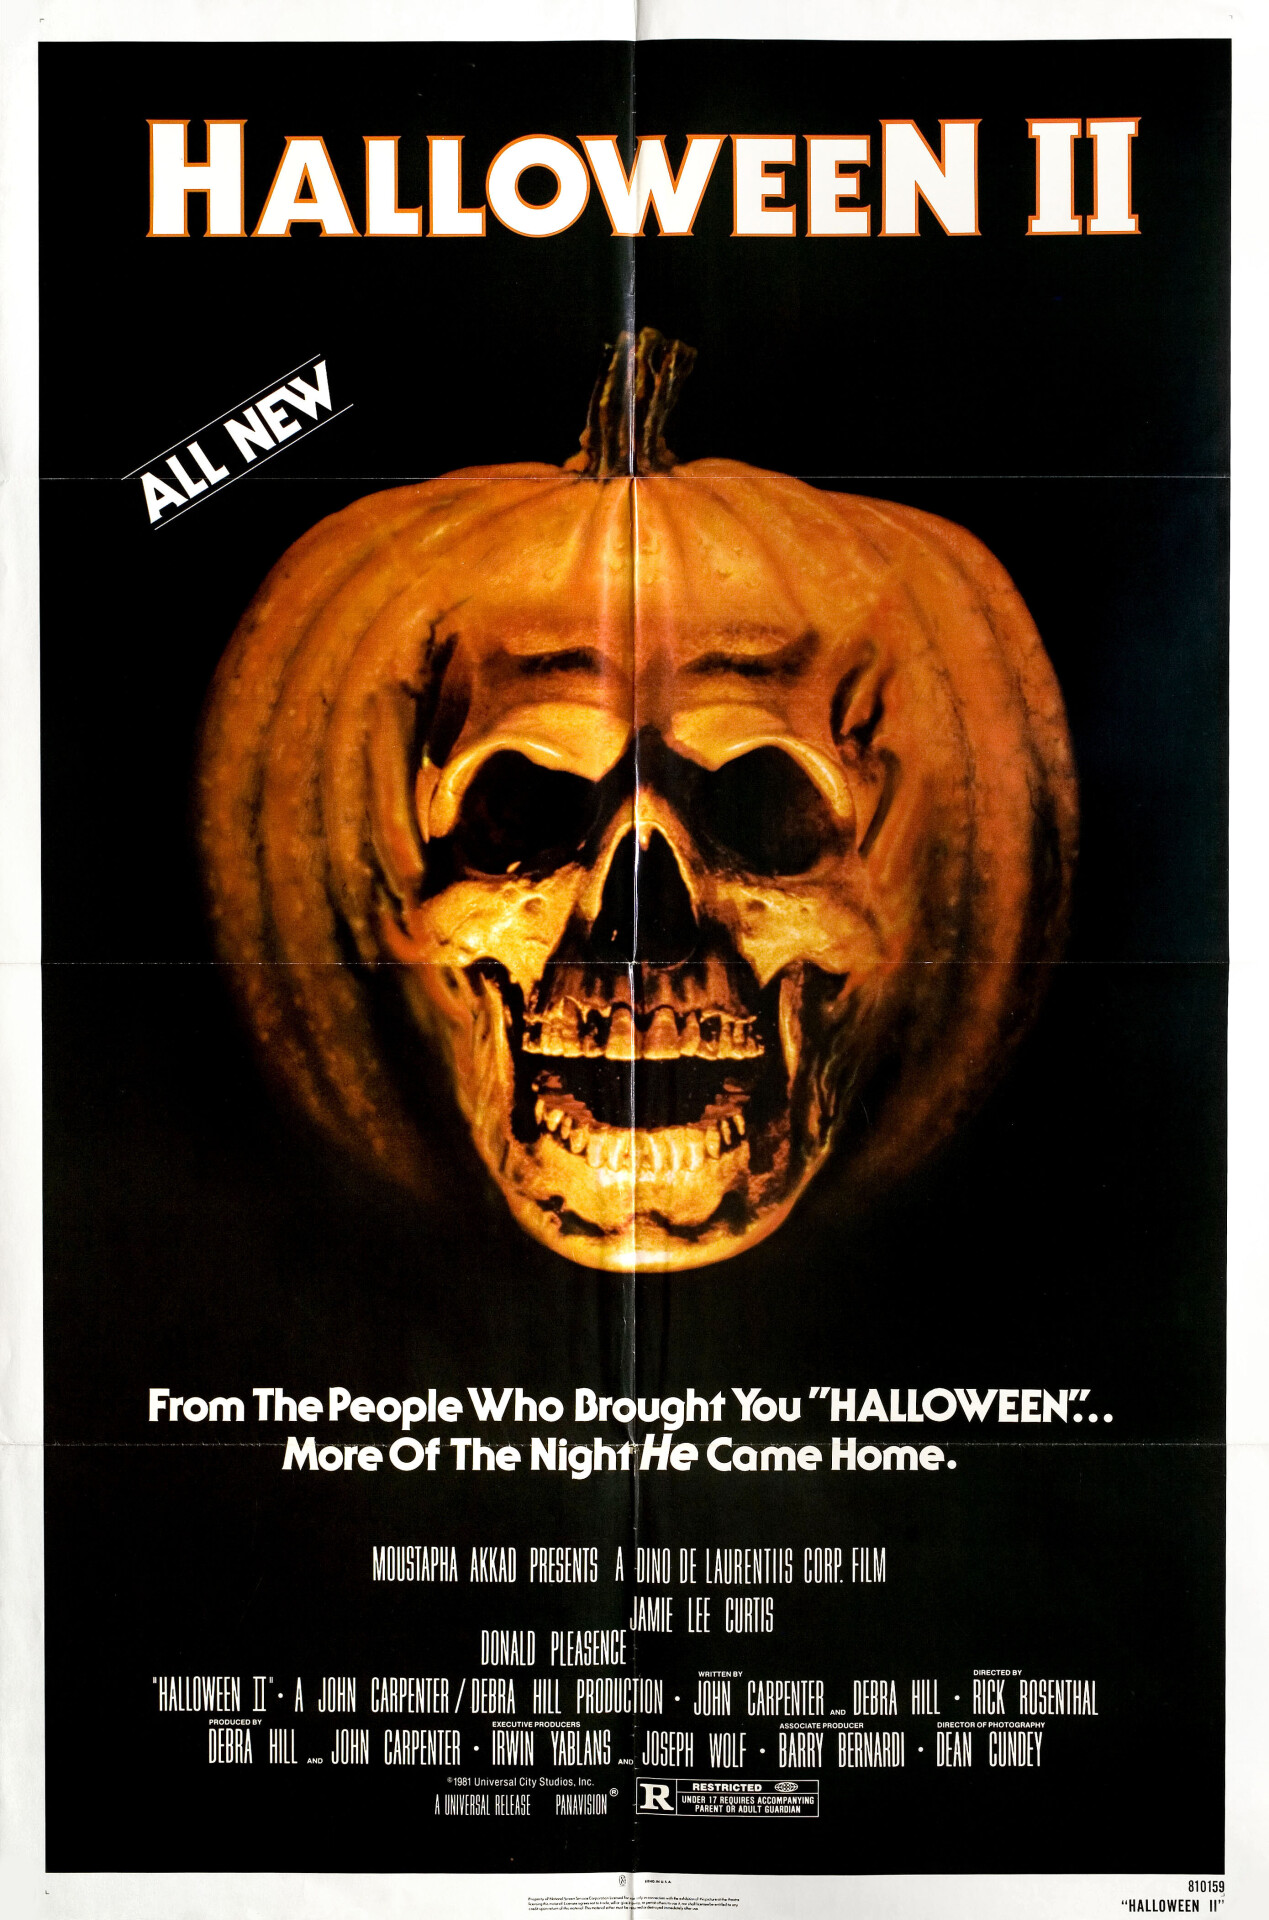 Хэллоуин 2 (Halloween II, 1981), режиссёр Рик Розенталь, американский постер к фильму (ужасы, 1981 год)